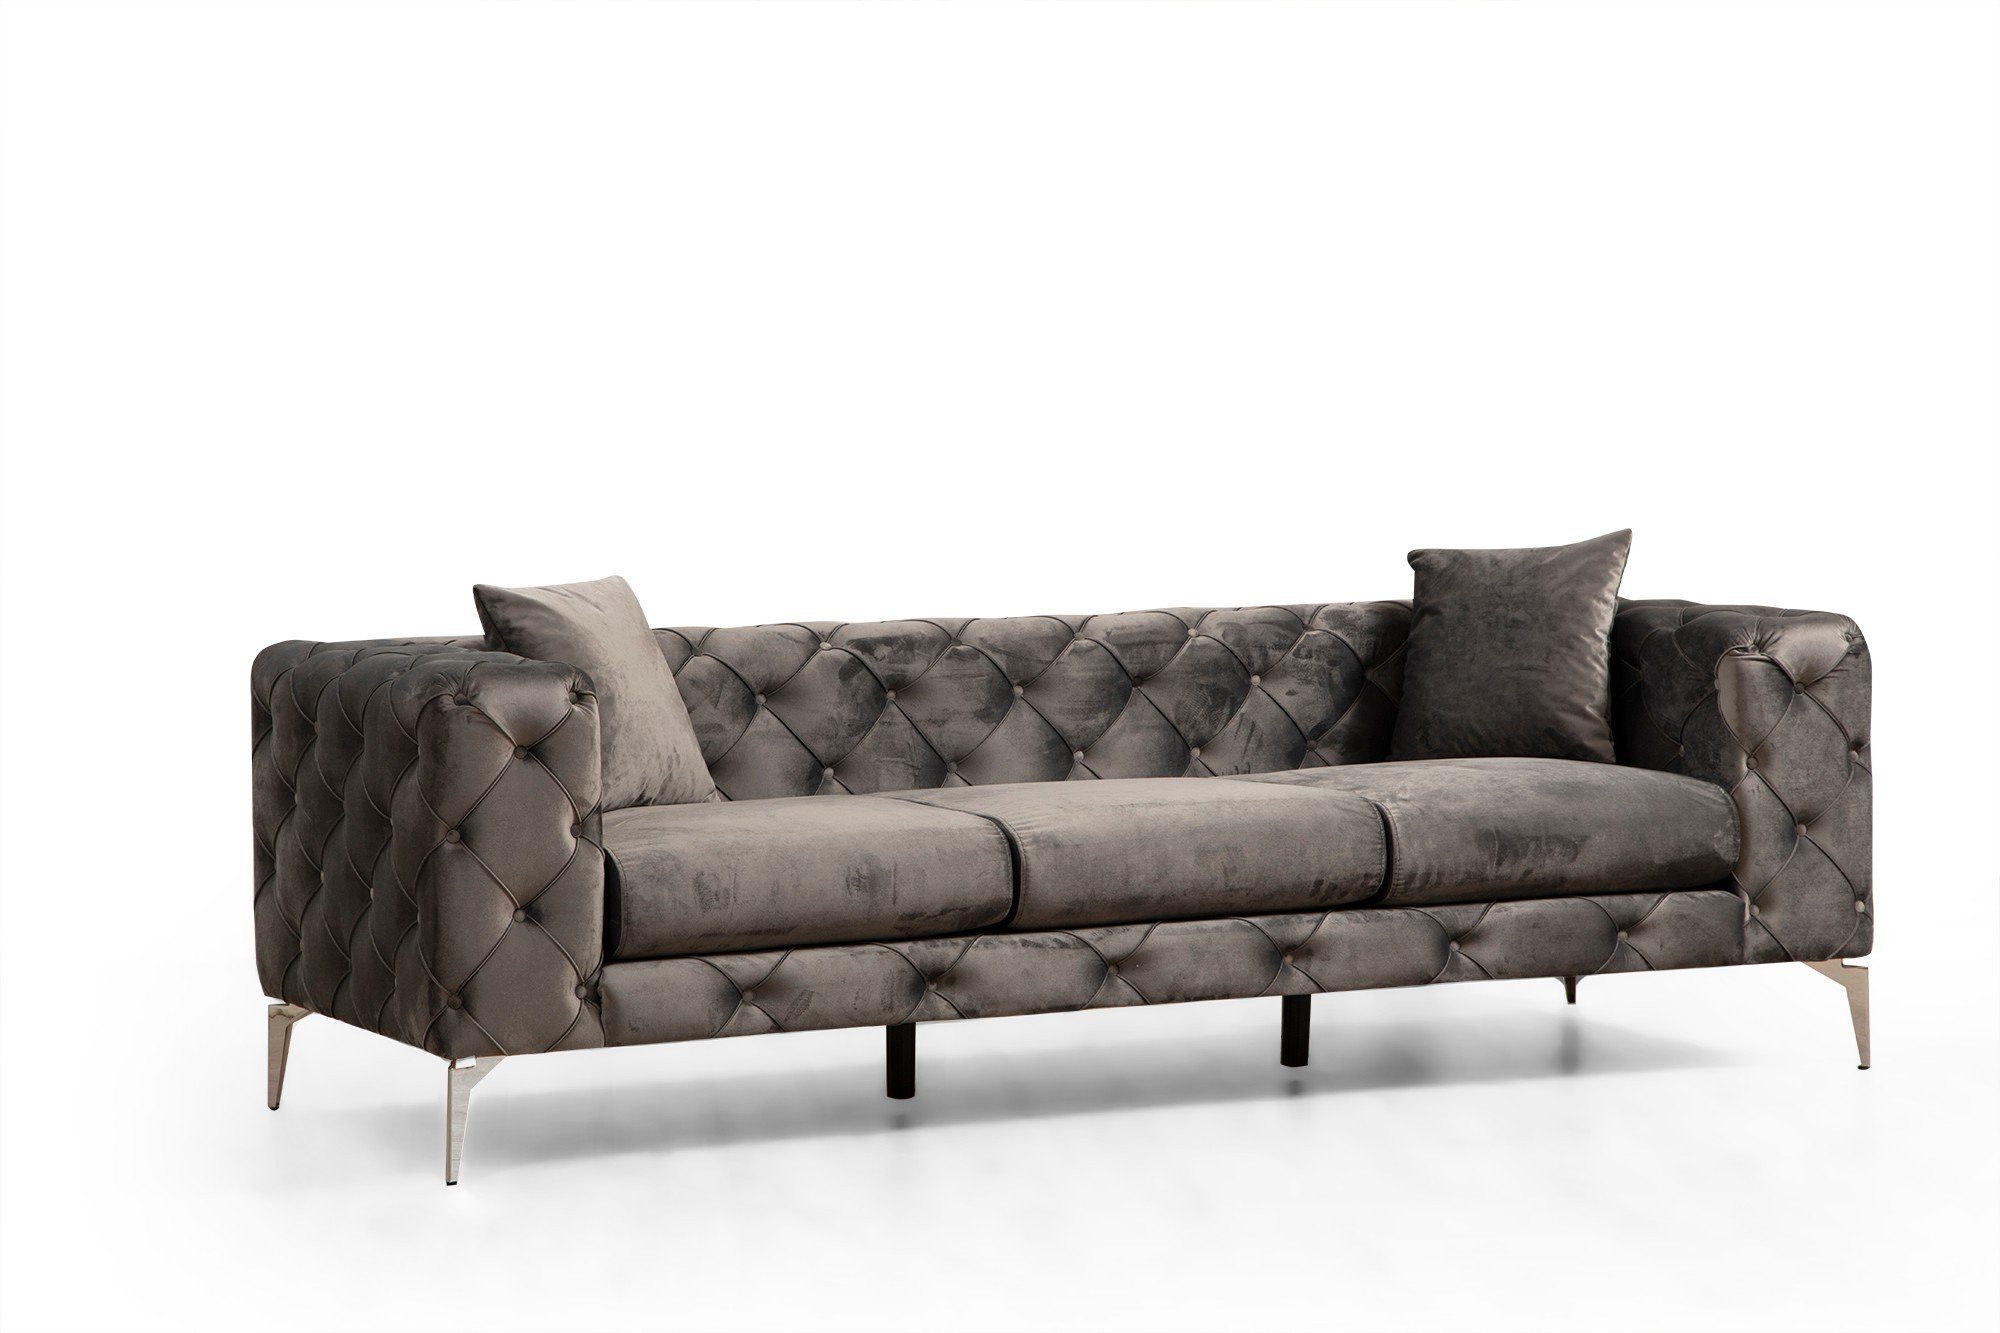 Skye Decor Sofa HLN1111 cm cm x 45 45